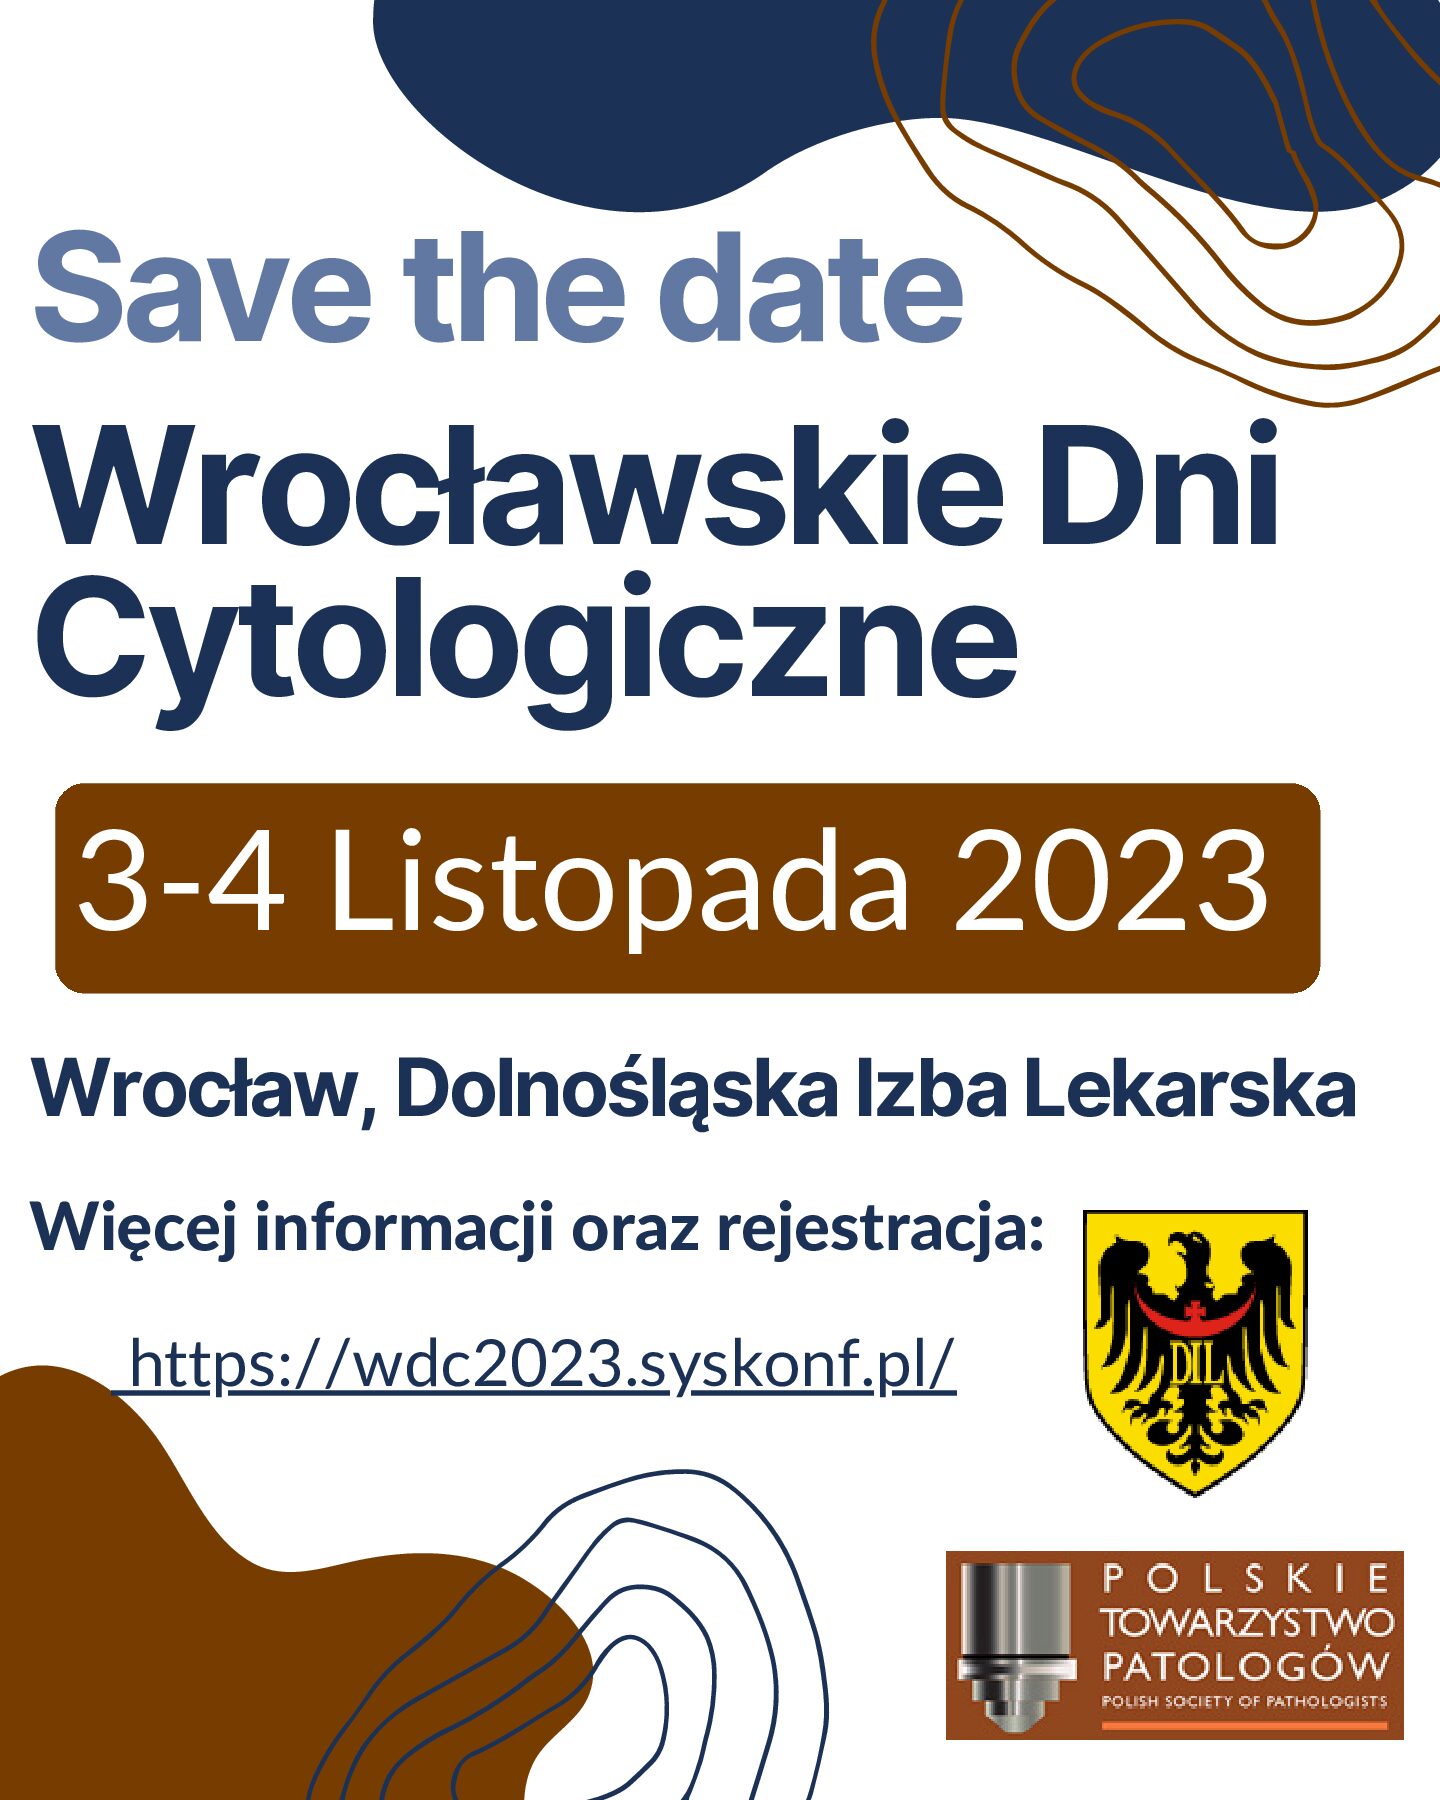 Wrocławskie Dni Cytologiczne